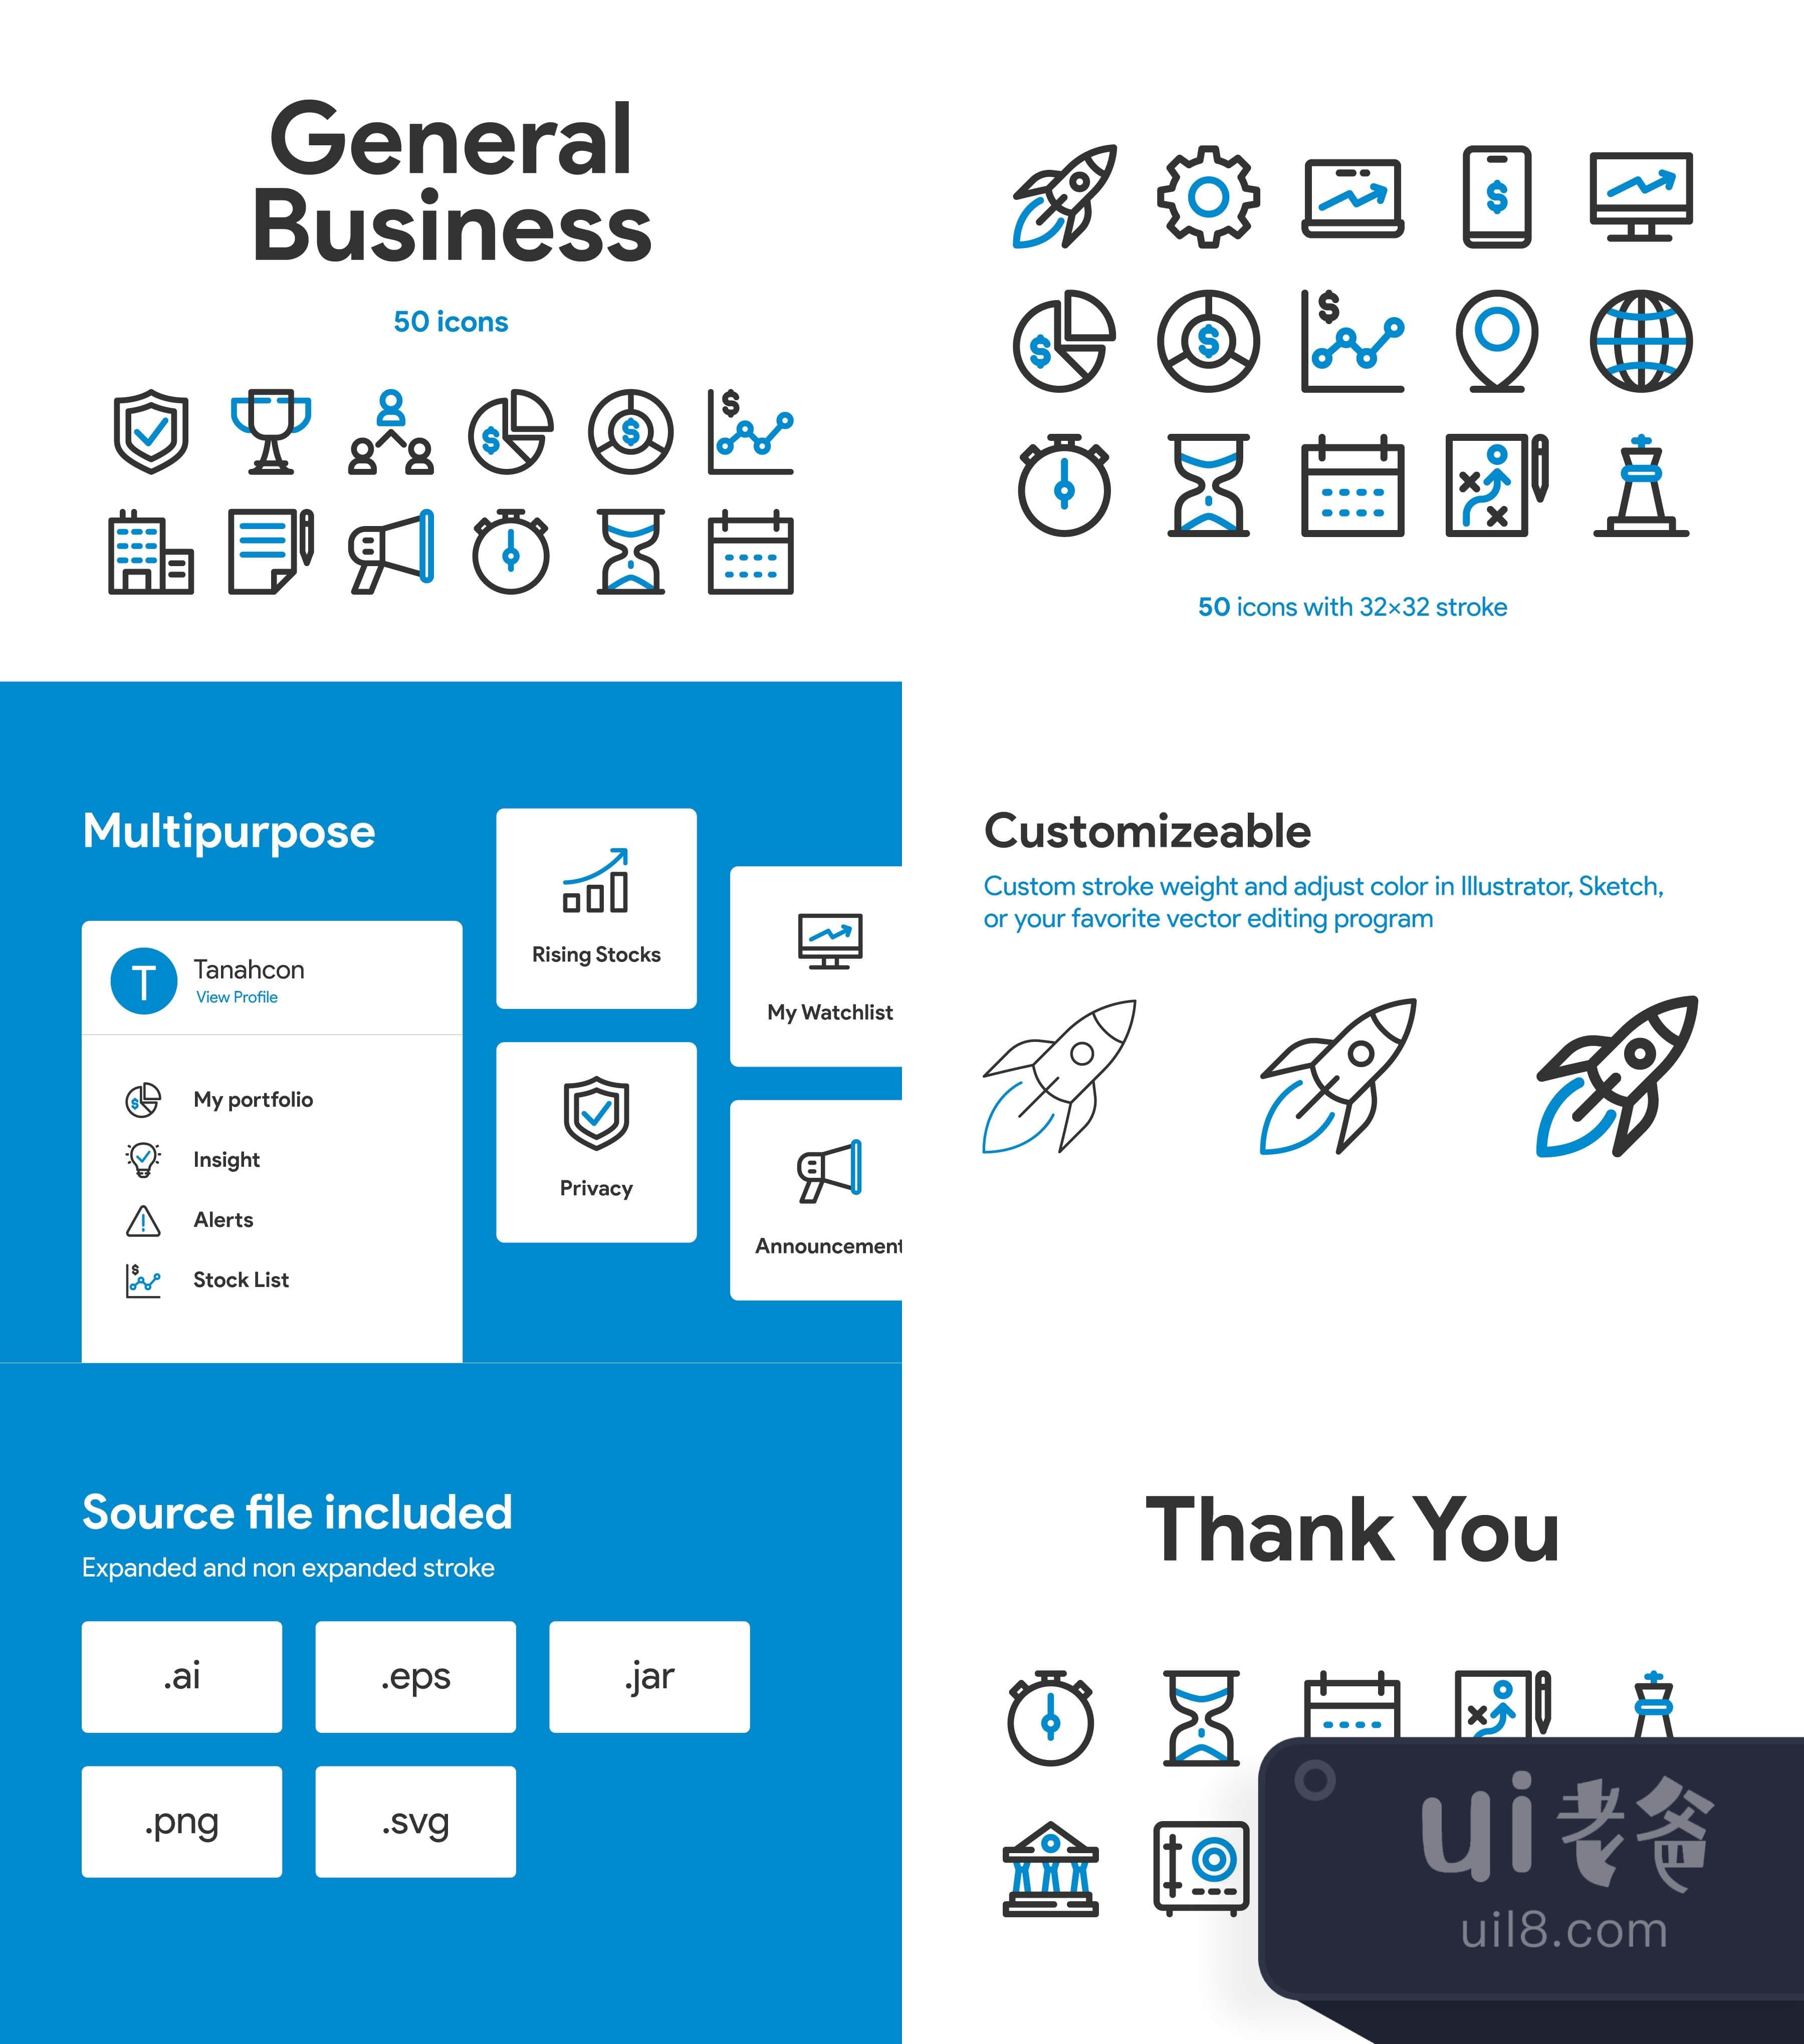 通用商业图标集 (General Business Icon Set)插图1